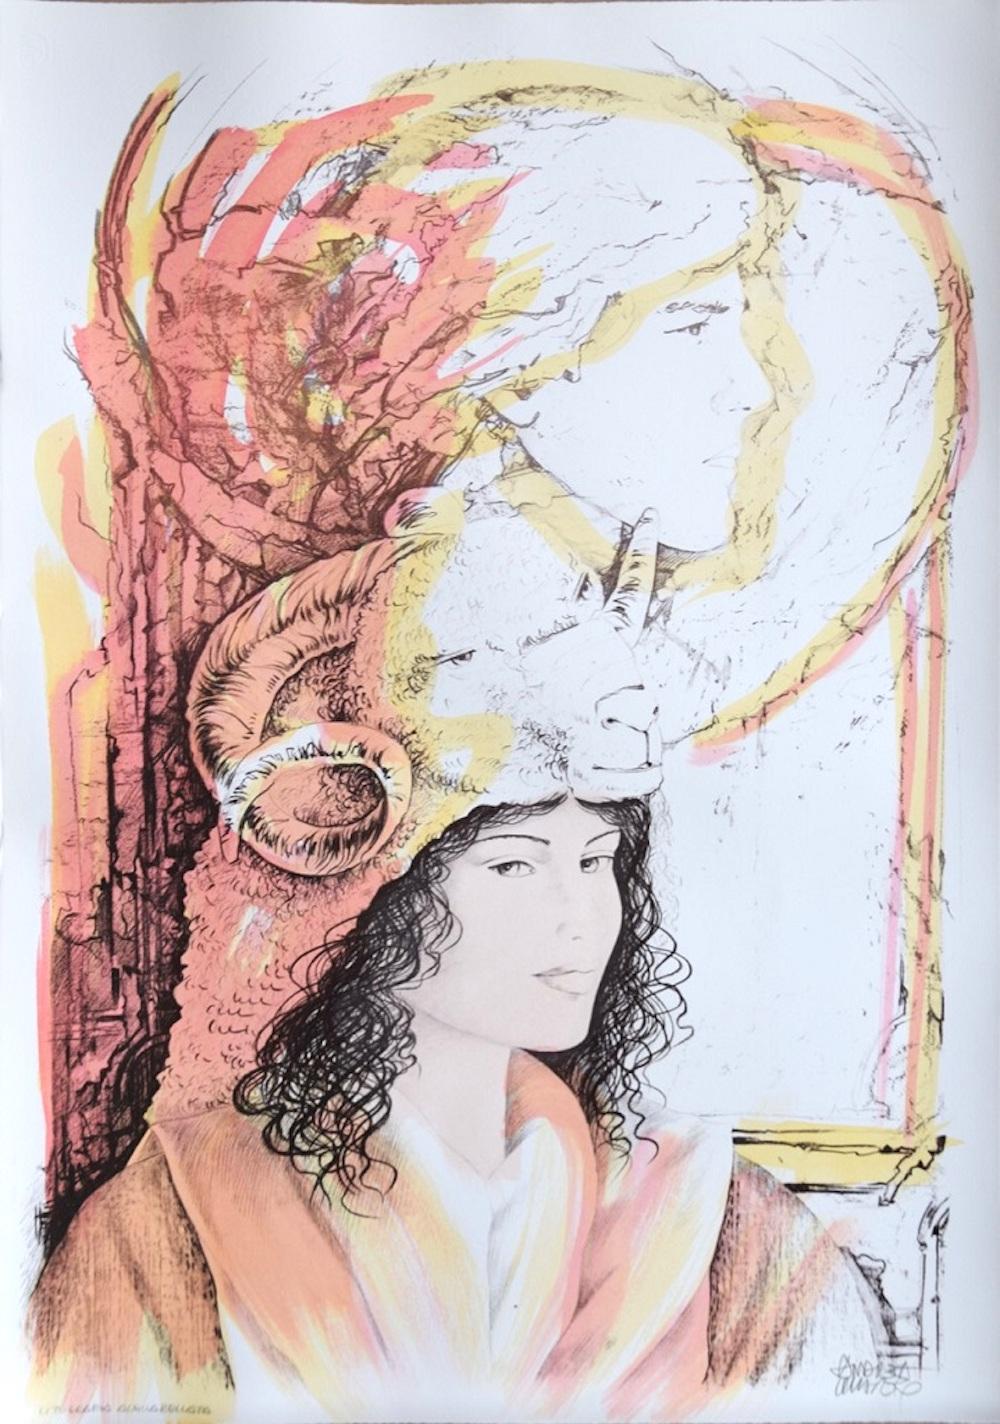 Andrea Quarto Figurative Print - Aries - Hand-Colored Lithograph by A. Quarto - 1985